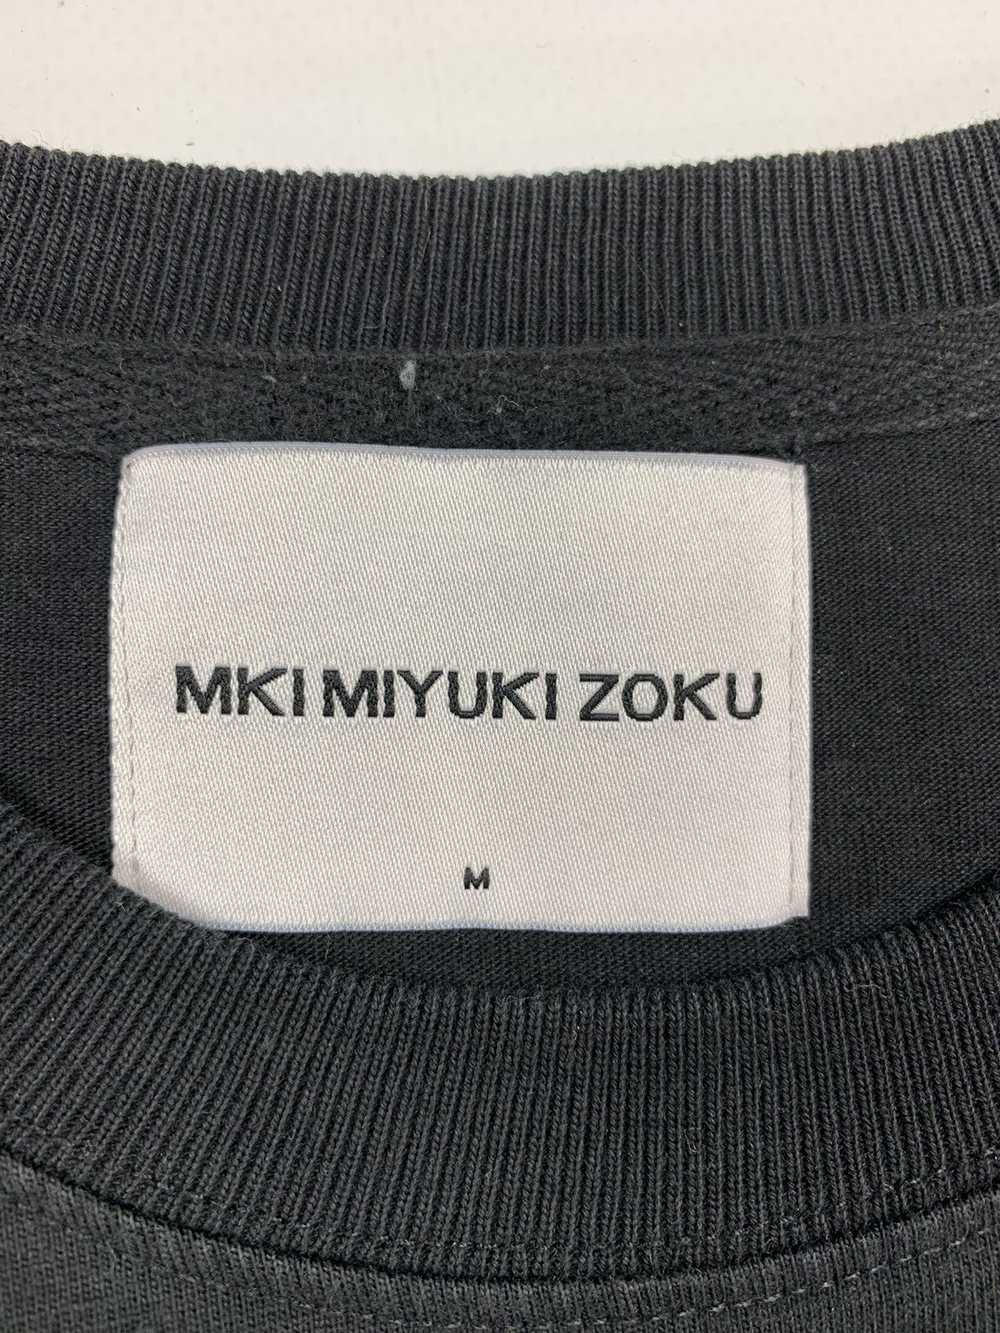 Mki Miyuki-Zoku Mki Miyuki Zoku T Shirt Japanese … - image 4